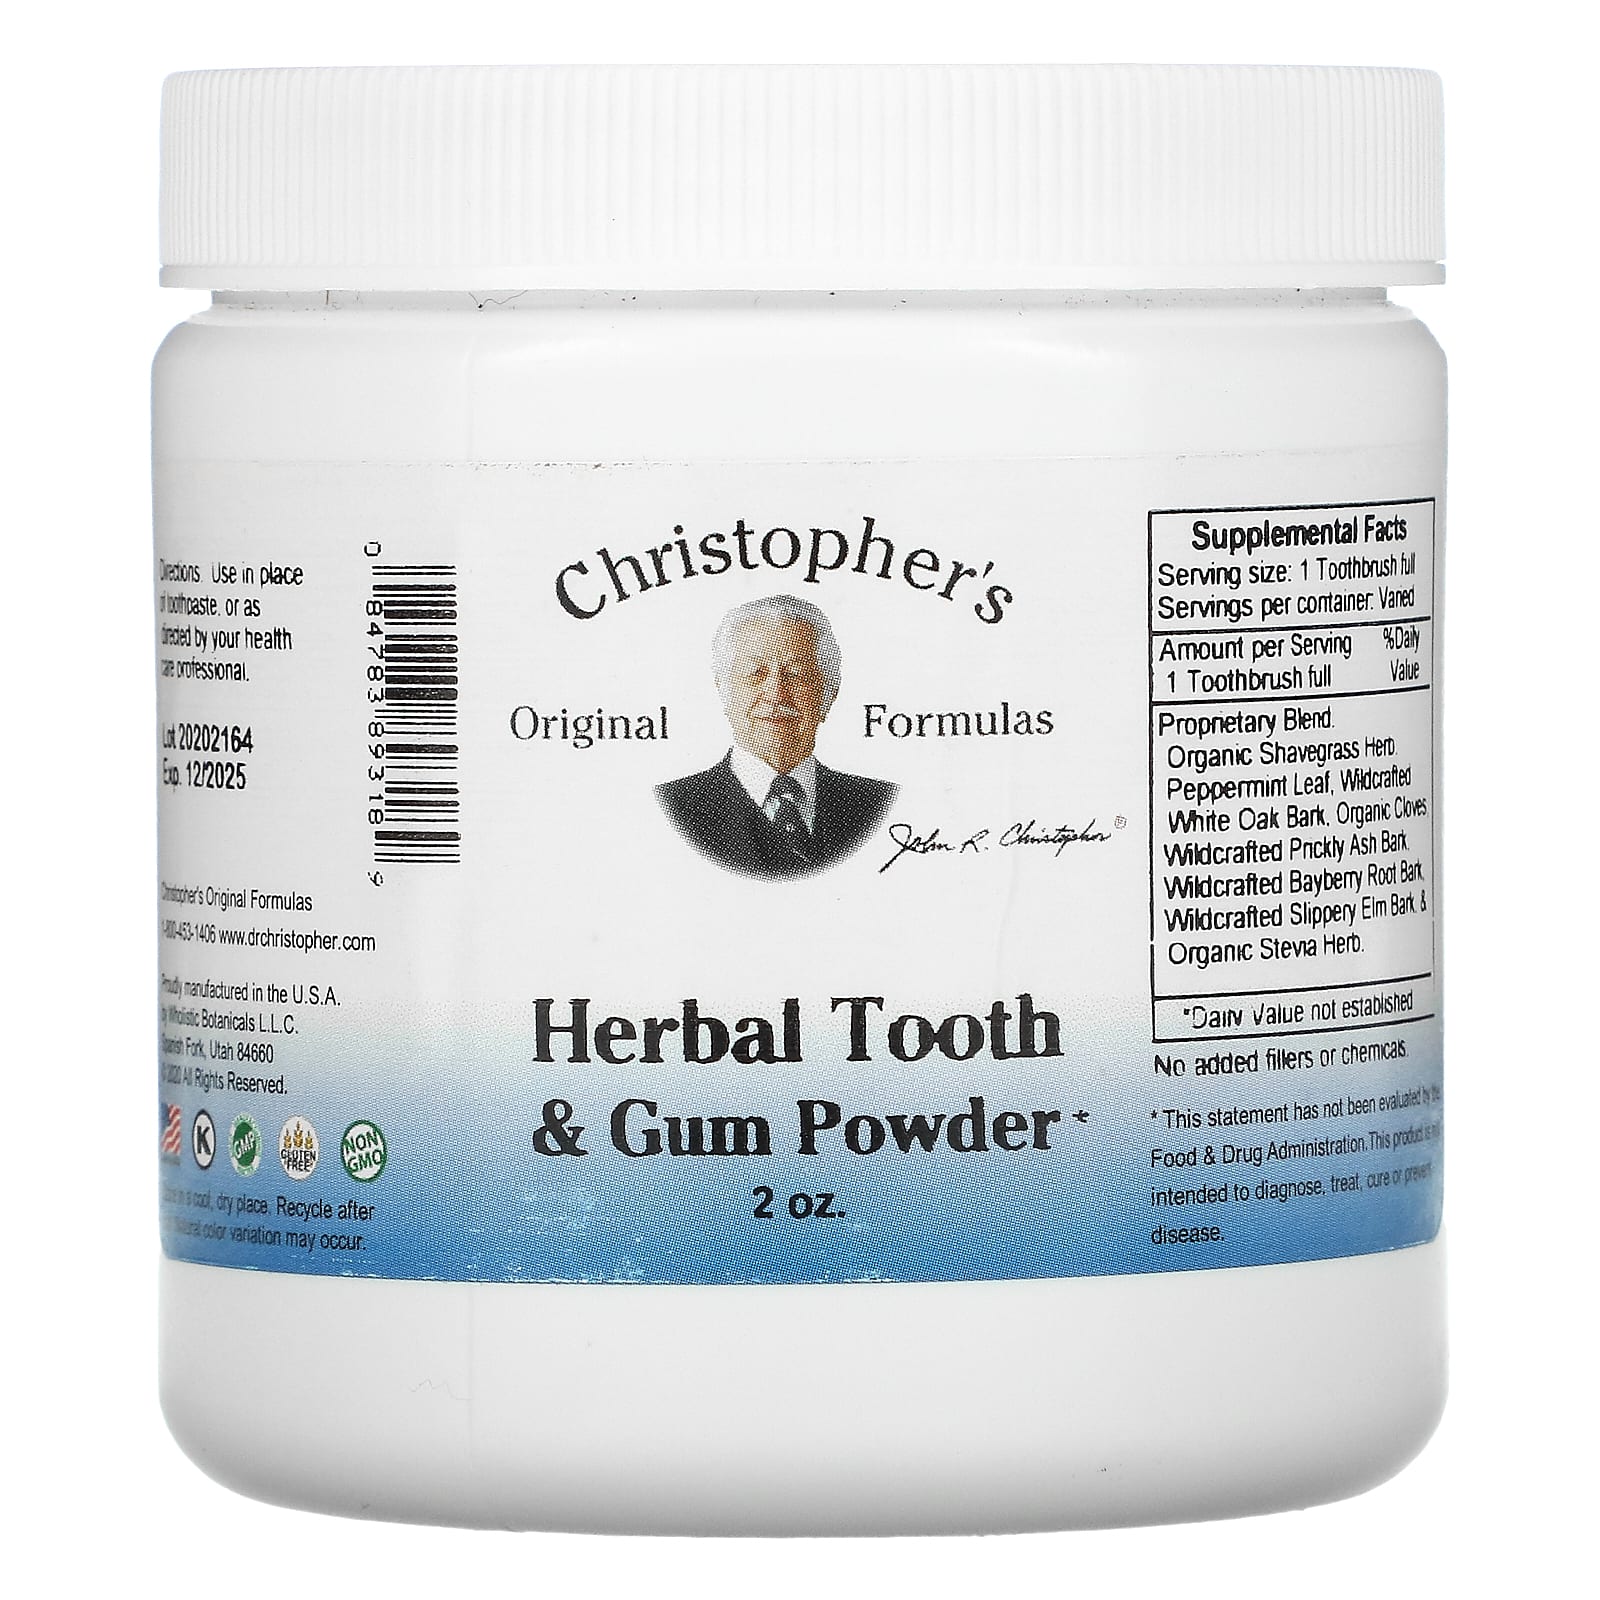 Christopher's Original Formulas травяной порошок для зубов и десен 56 г (2 унции)